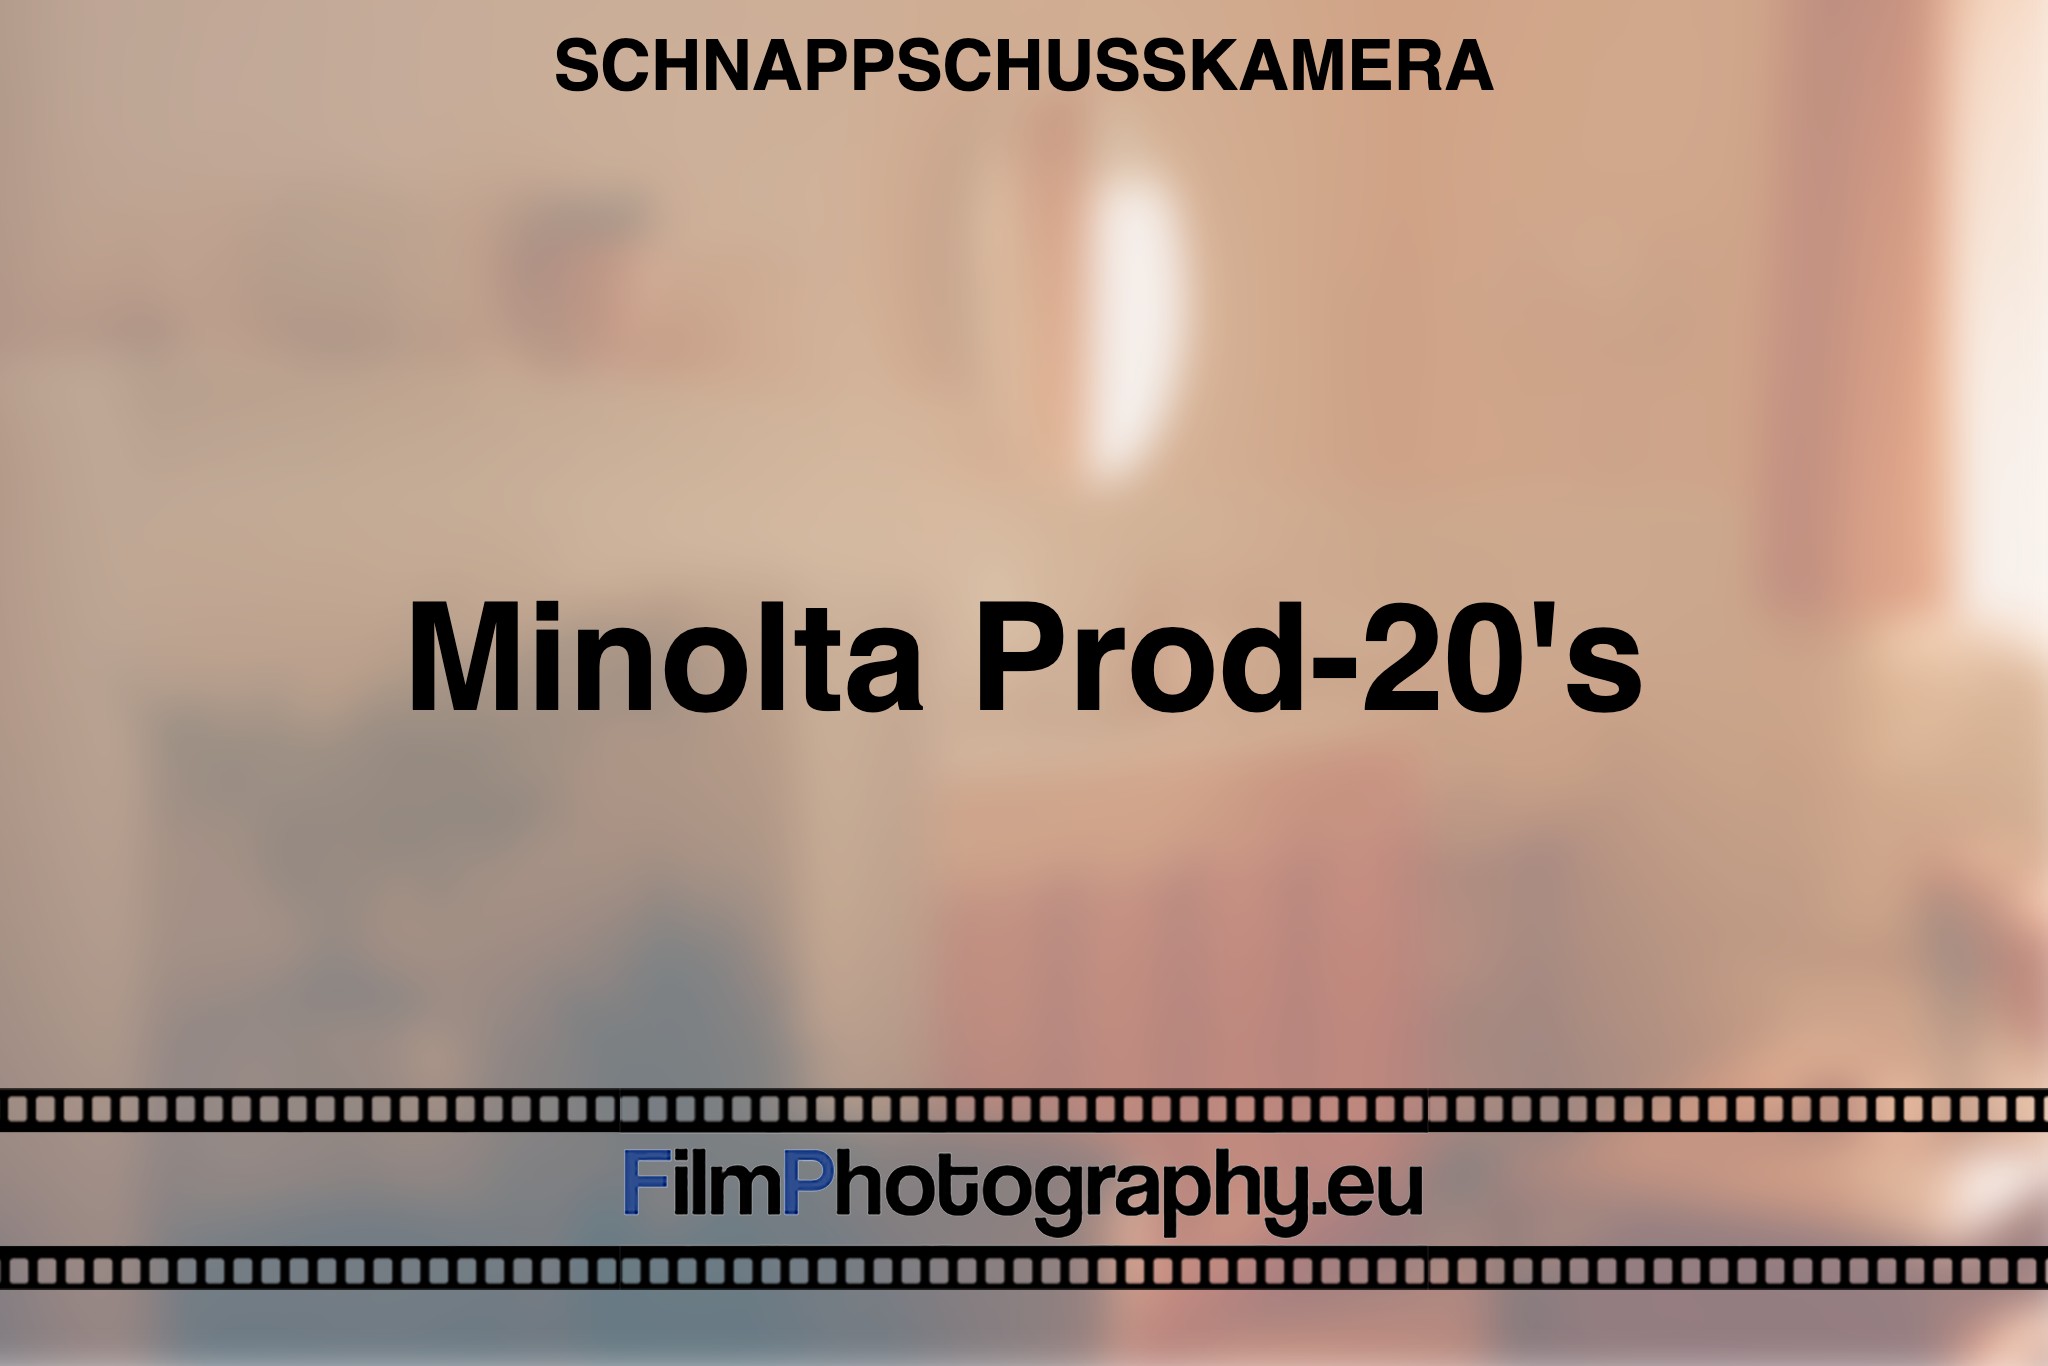 minolta-prod-20's-schnappschusskamera-bnv